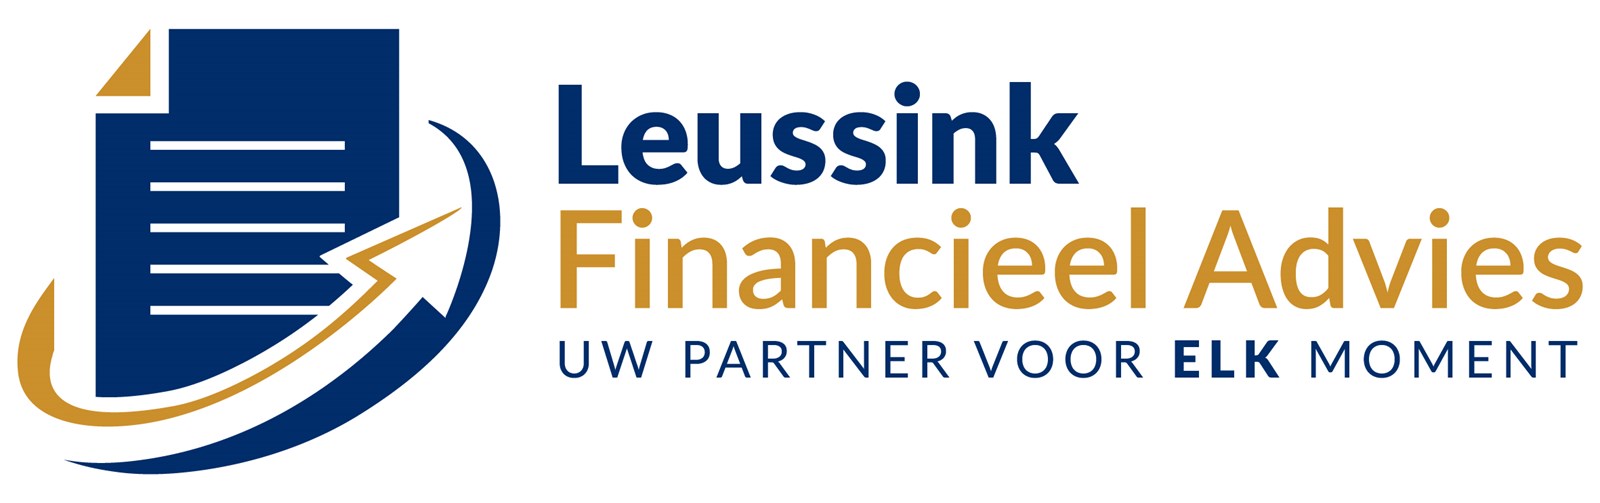 Afbeelding van Leussink Financieel Advies